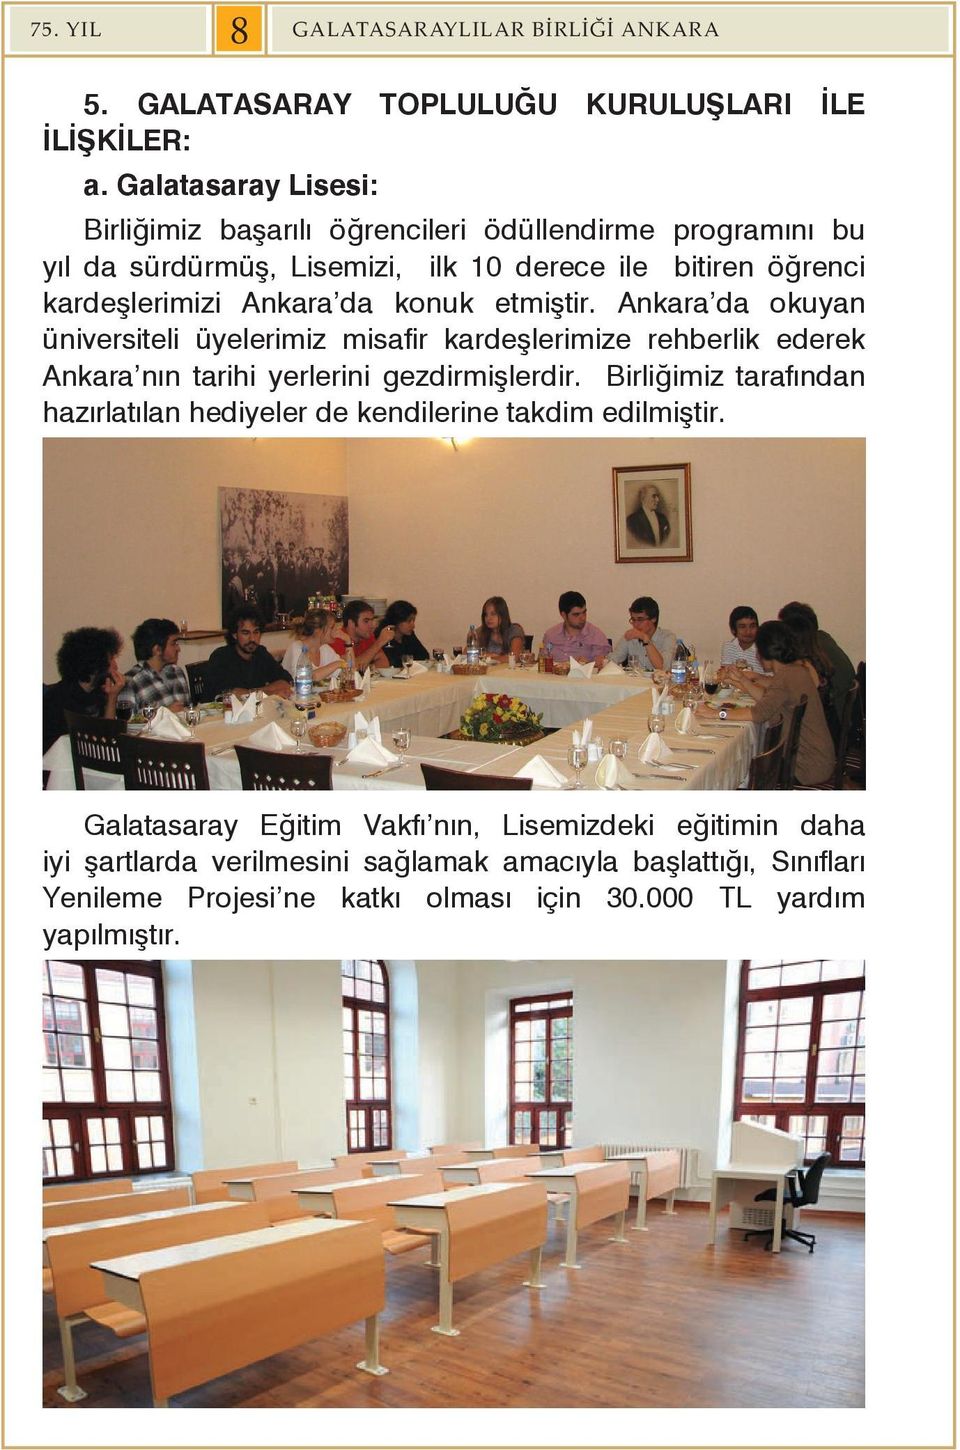 konuk etmiştir. Ankara da okuyan üniversiteli üyelerimiz misafir kardeşlerimize rehberlik ederek Ankara nın tarihi yerlerini gezdirmişlerdir.